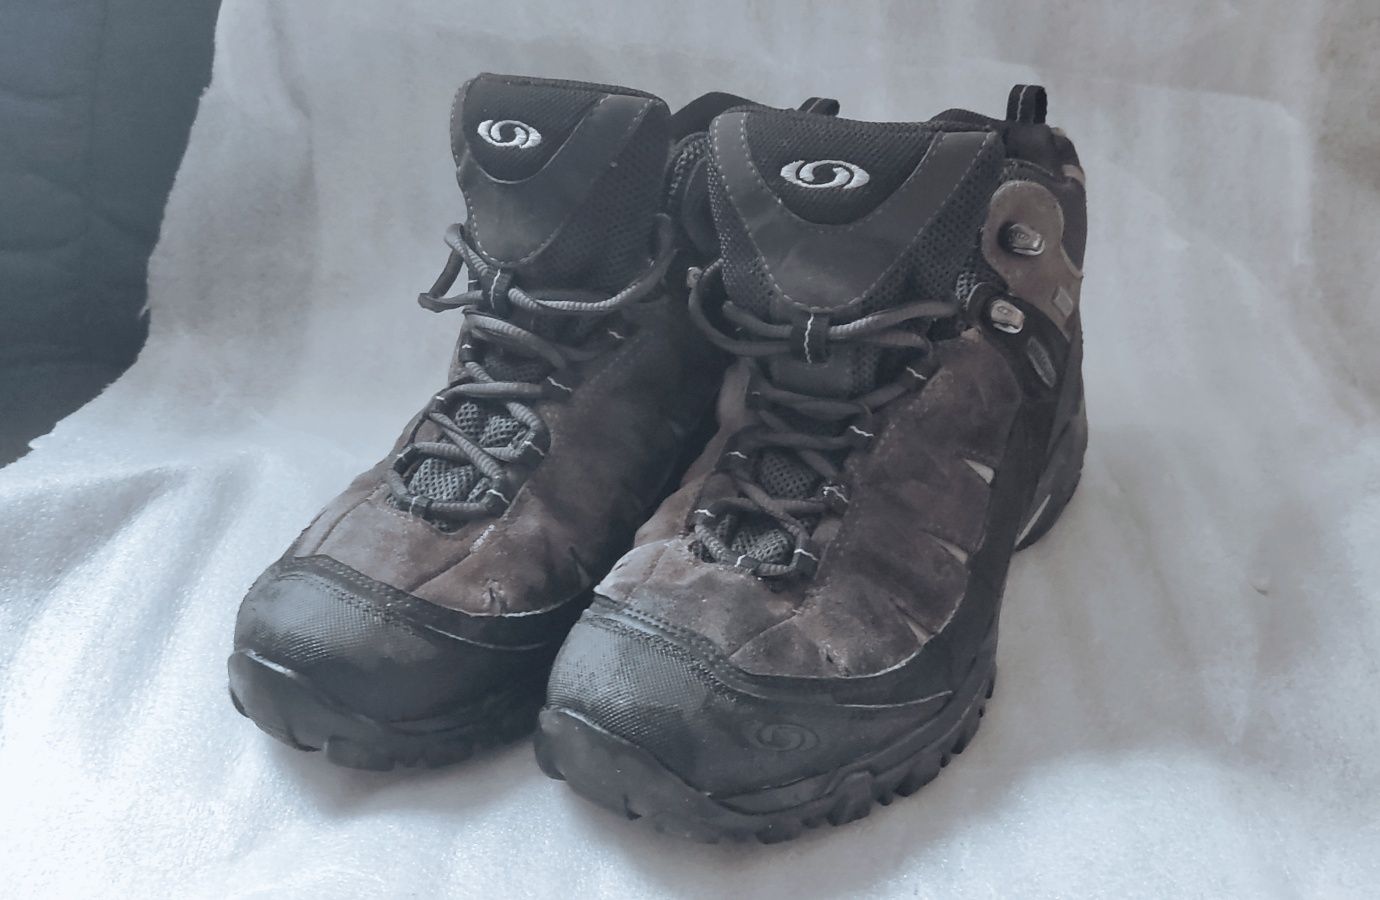 Salomon buty trekkingowe do kostki trzewiki r38 24,5cm trapery goretex